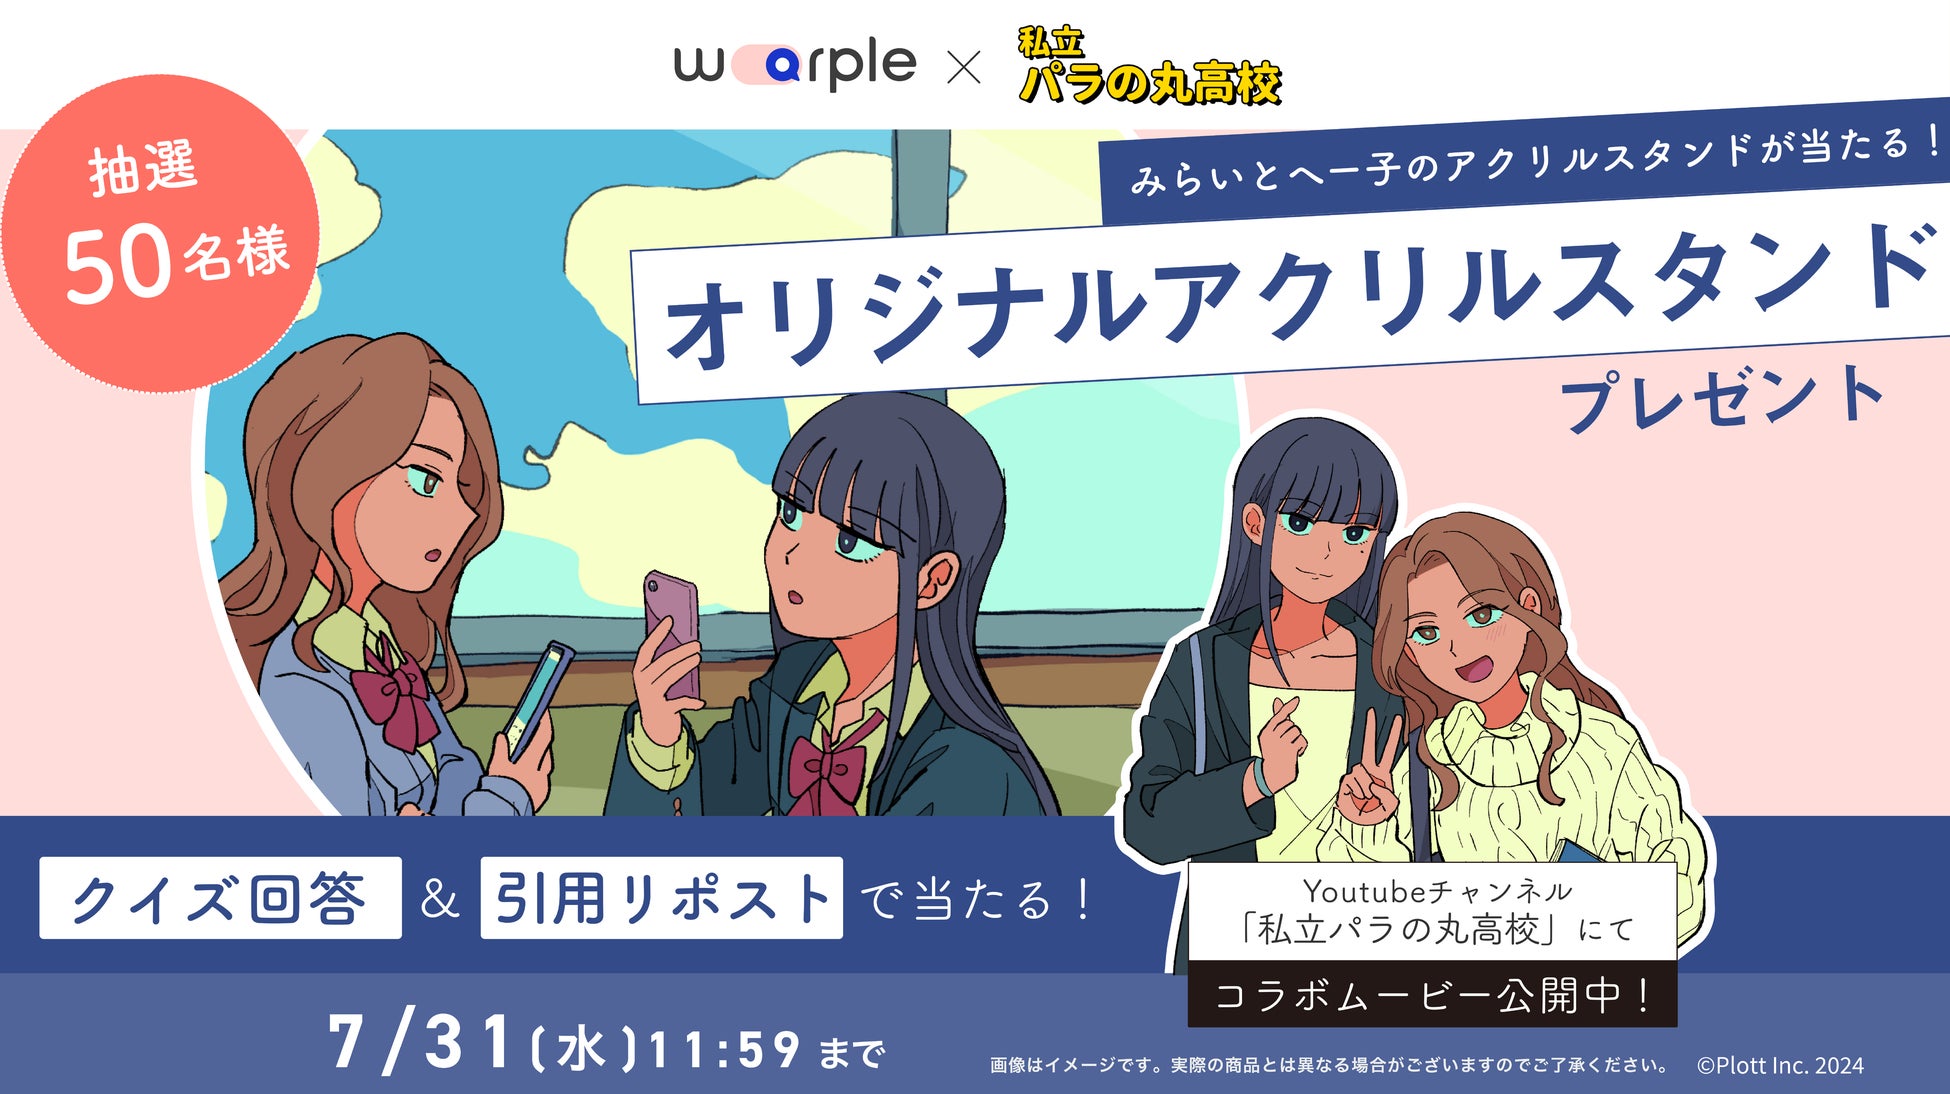 日本初のオンライン留学手配サイト「warple」が累計再生数4.9億回以上のSNSアニメ「私立パラの丸高校」とのコラボ動画を公開！抽選で50名様にみらいとへー子のアクリルスタンドが当たる！